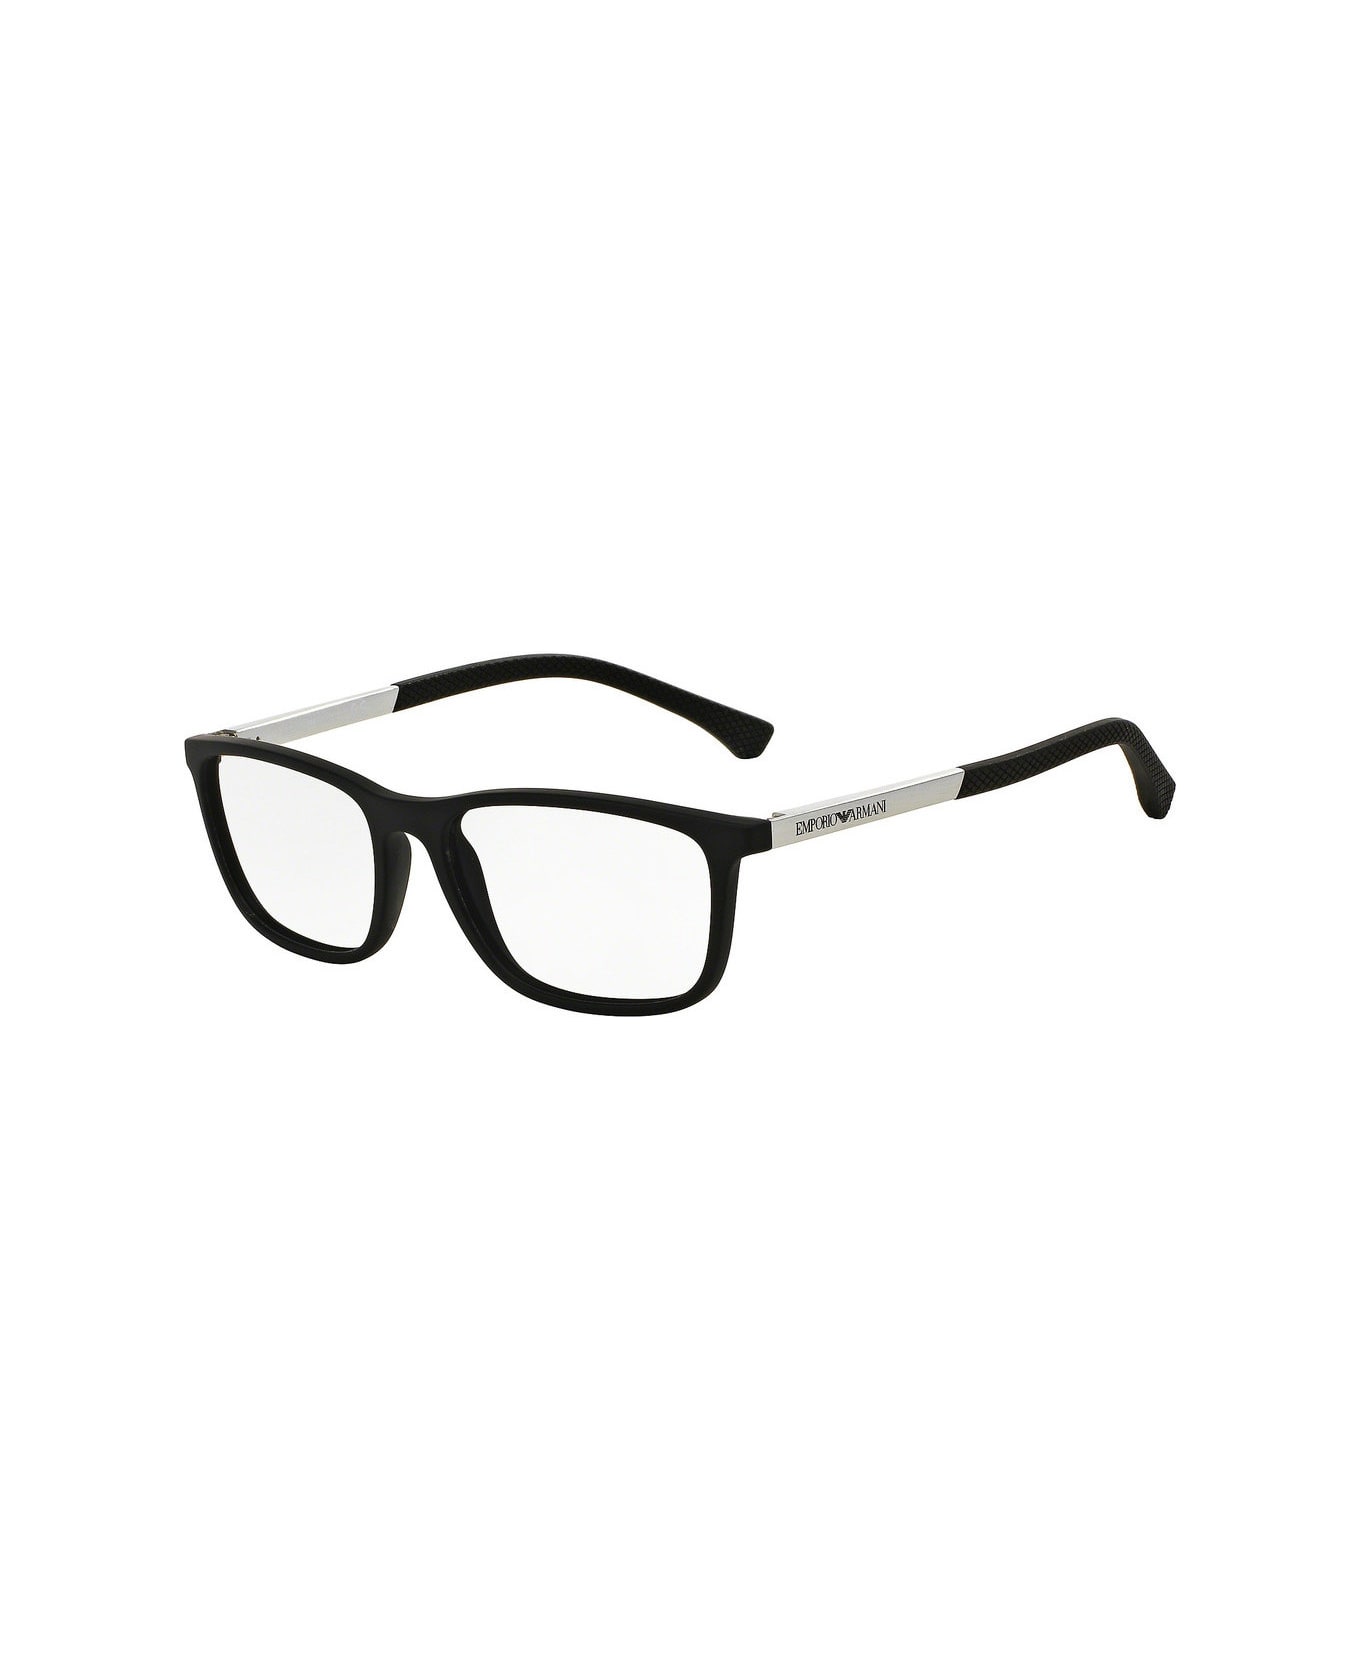 Emporio Armani EA3069 5063 Glasses - Nero astine acciaio